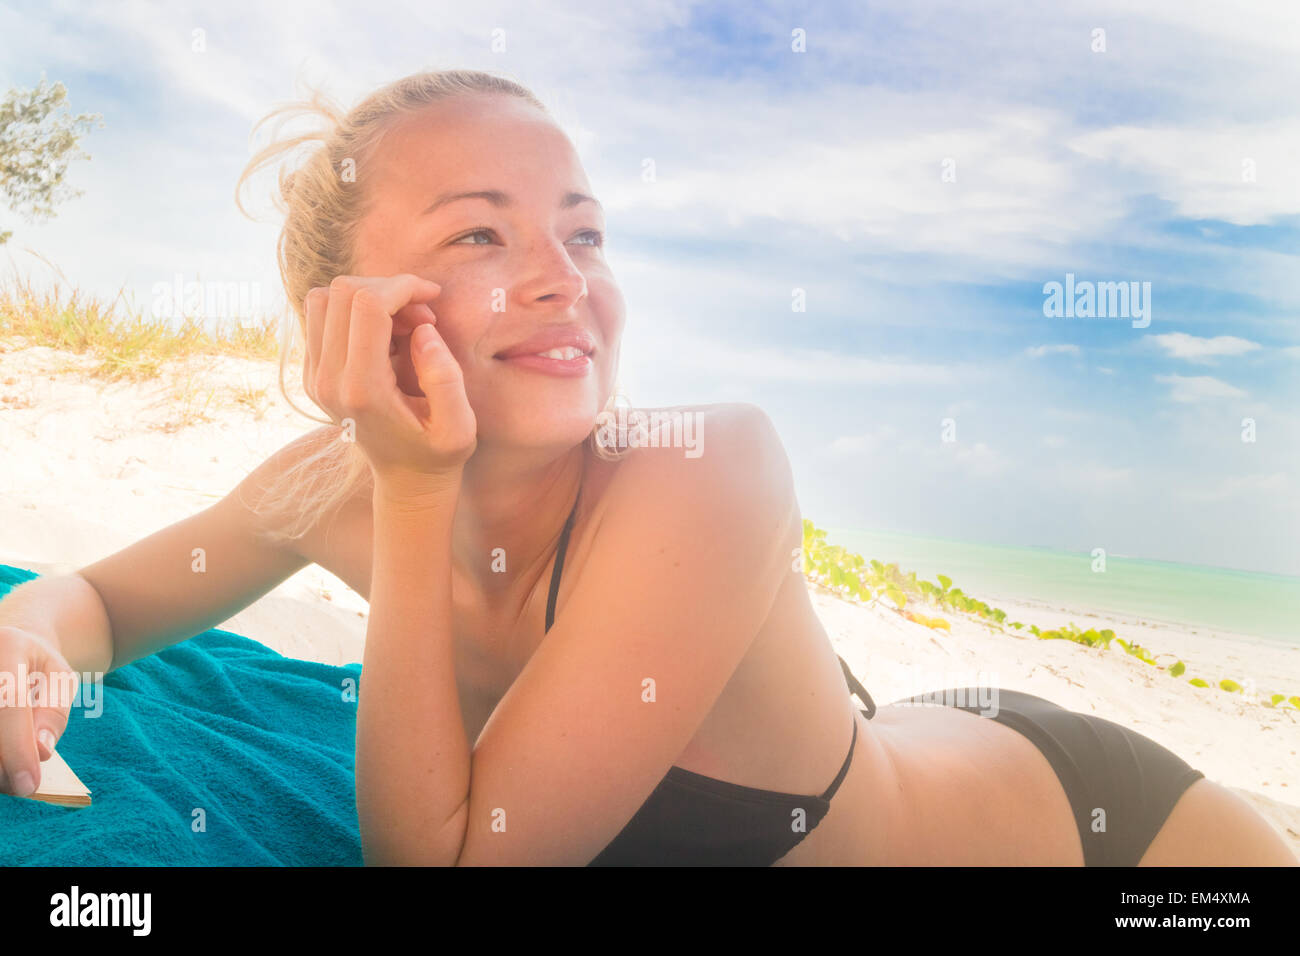 Happy woman in bikini on the beach. Stock Photo